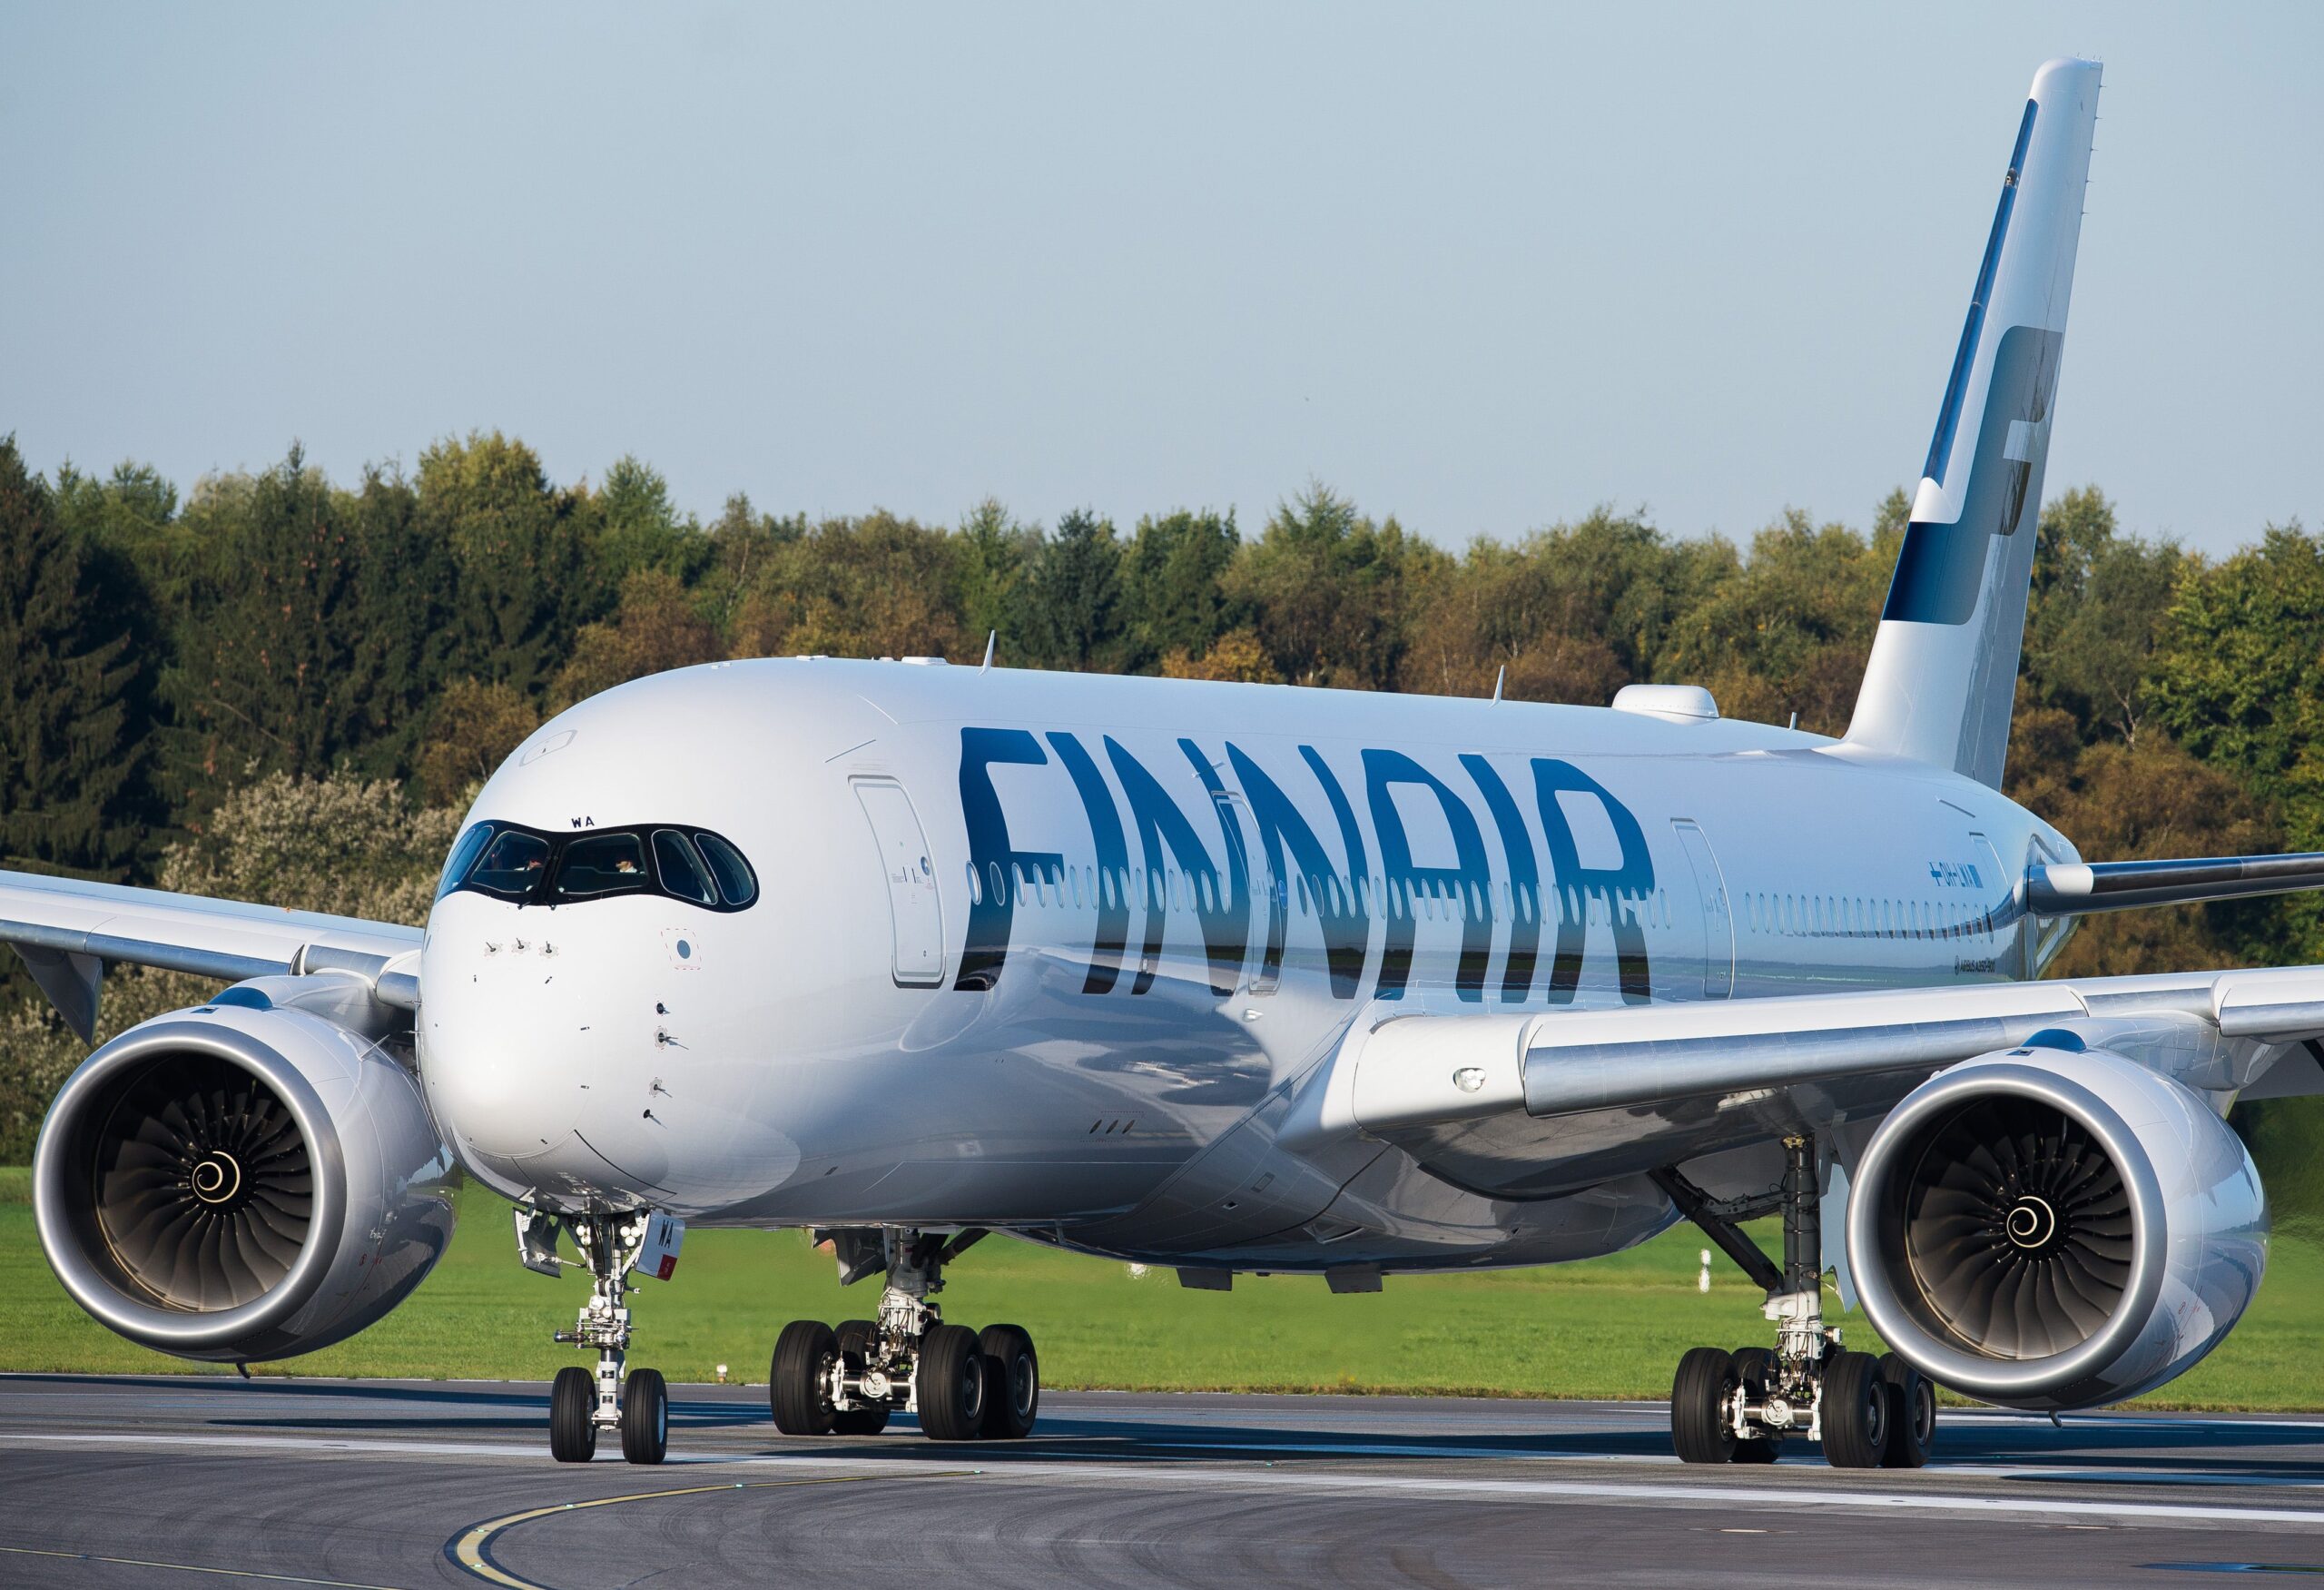 Finnair is de hoogste genoteerde Europese luchtvaartmaatschappij in de veiligheidsranking van AirlineRatings.com.